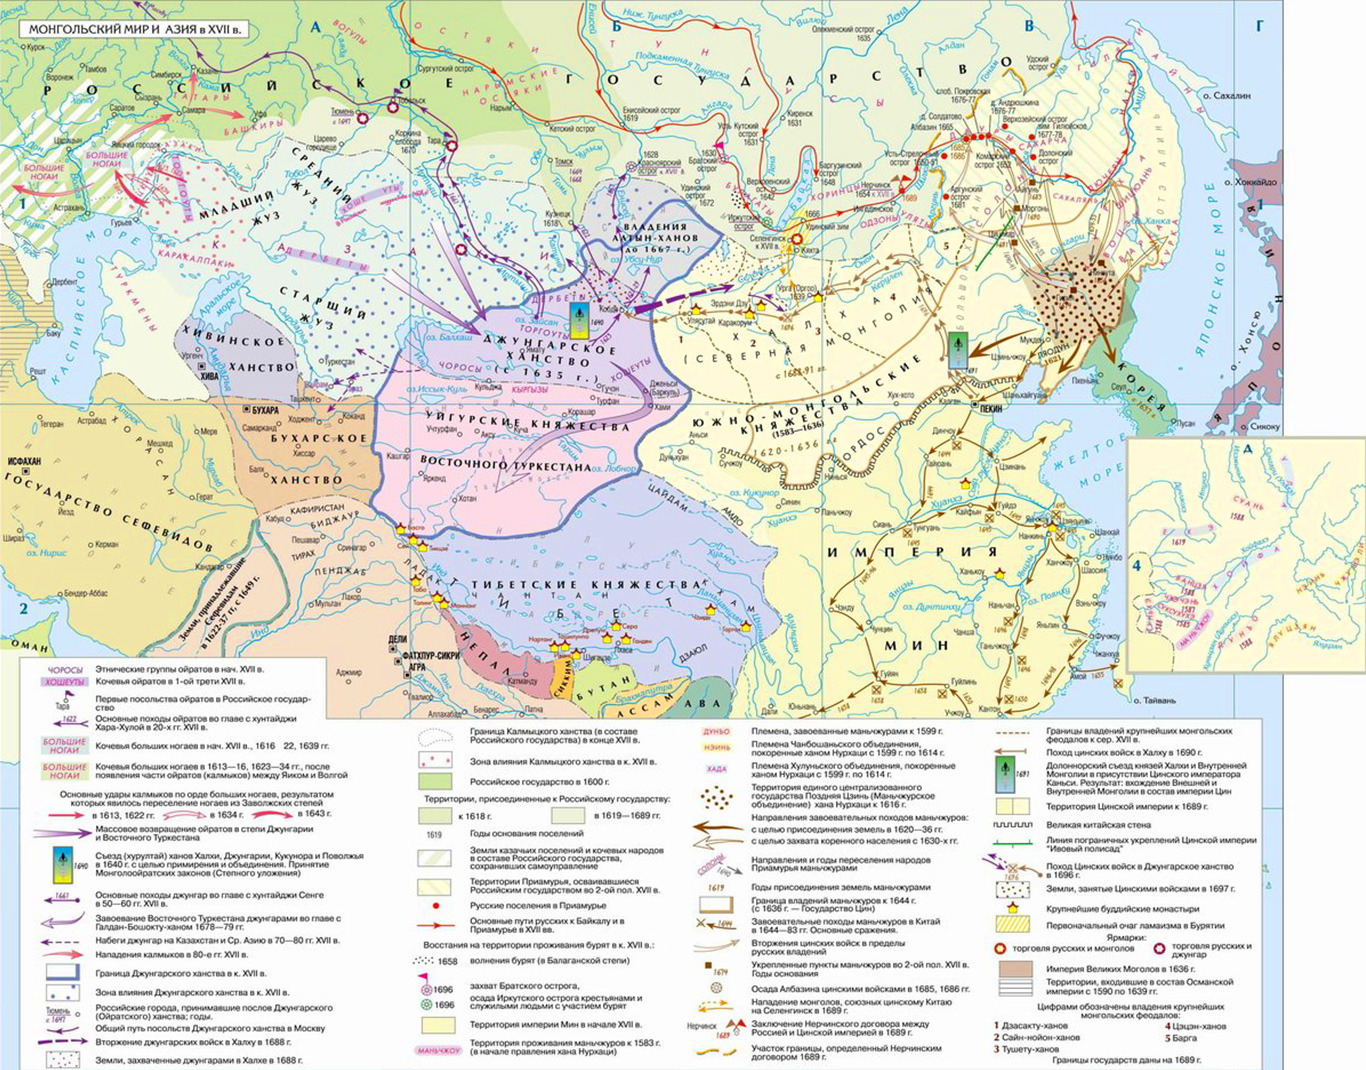 Asia 17. Карта средней Азии 16 век. Карта средней Азии в 16 веке. Средняя Азия 17 век карта. Карта средней Азии в 17 веке.